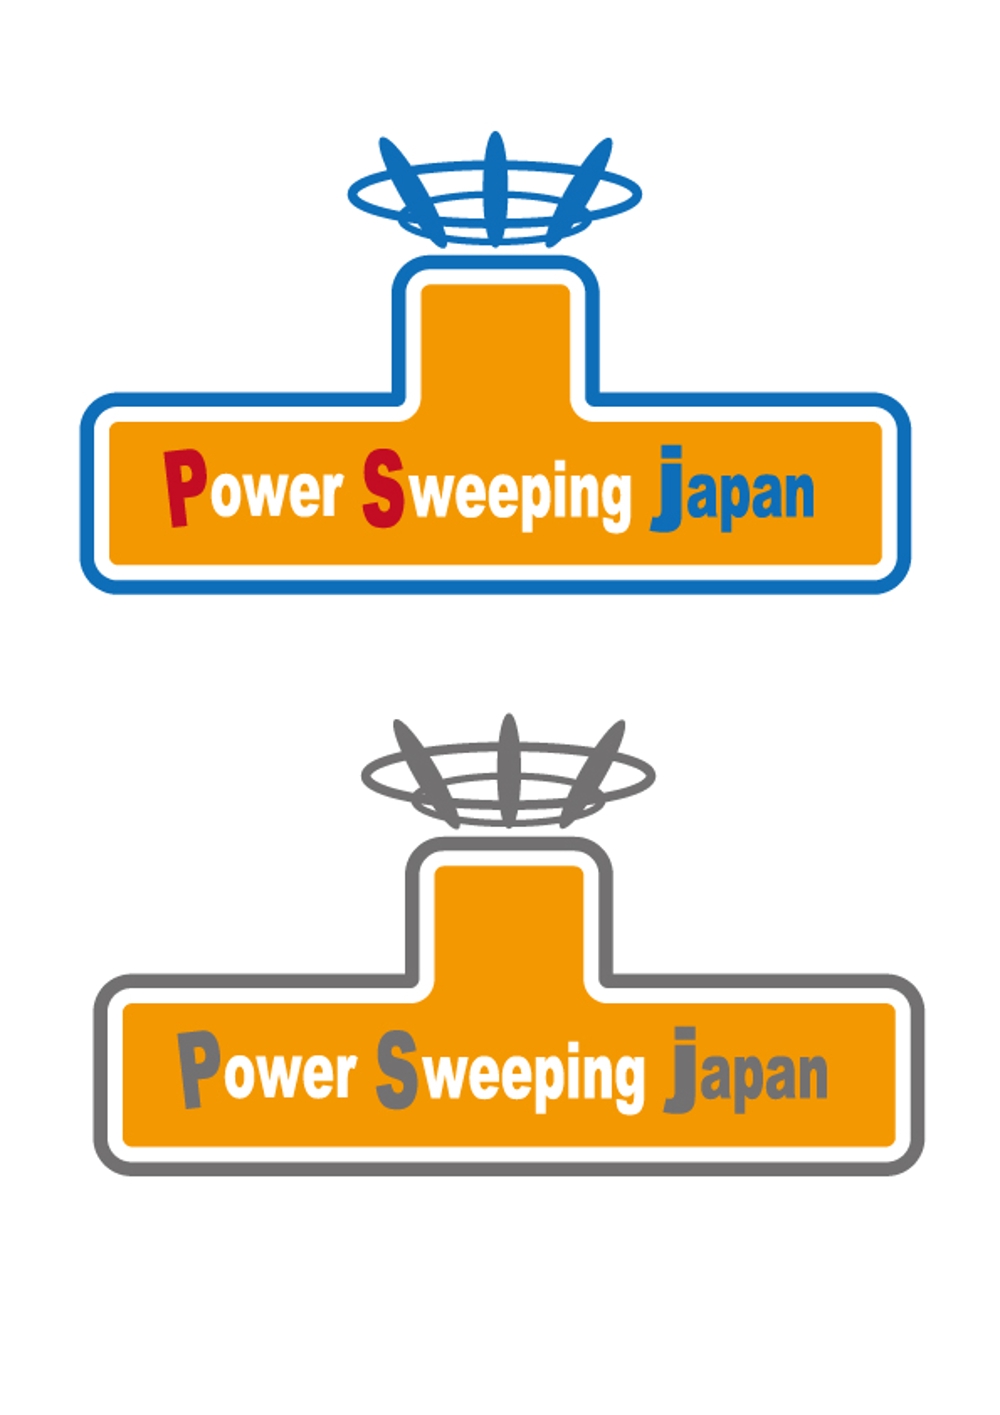 Power-sweeping-japan1.jpg